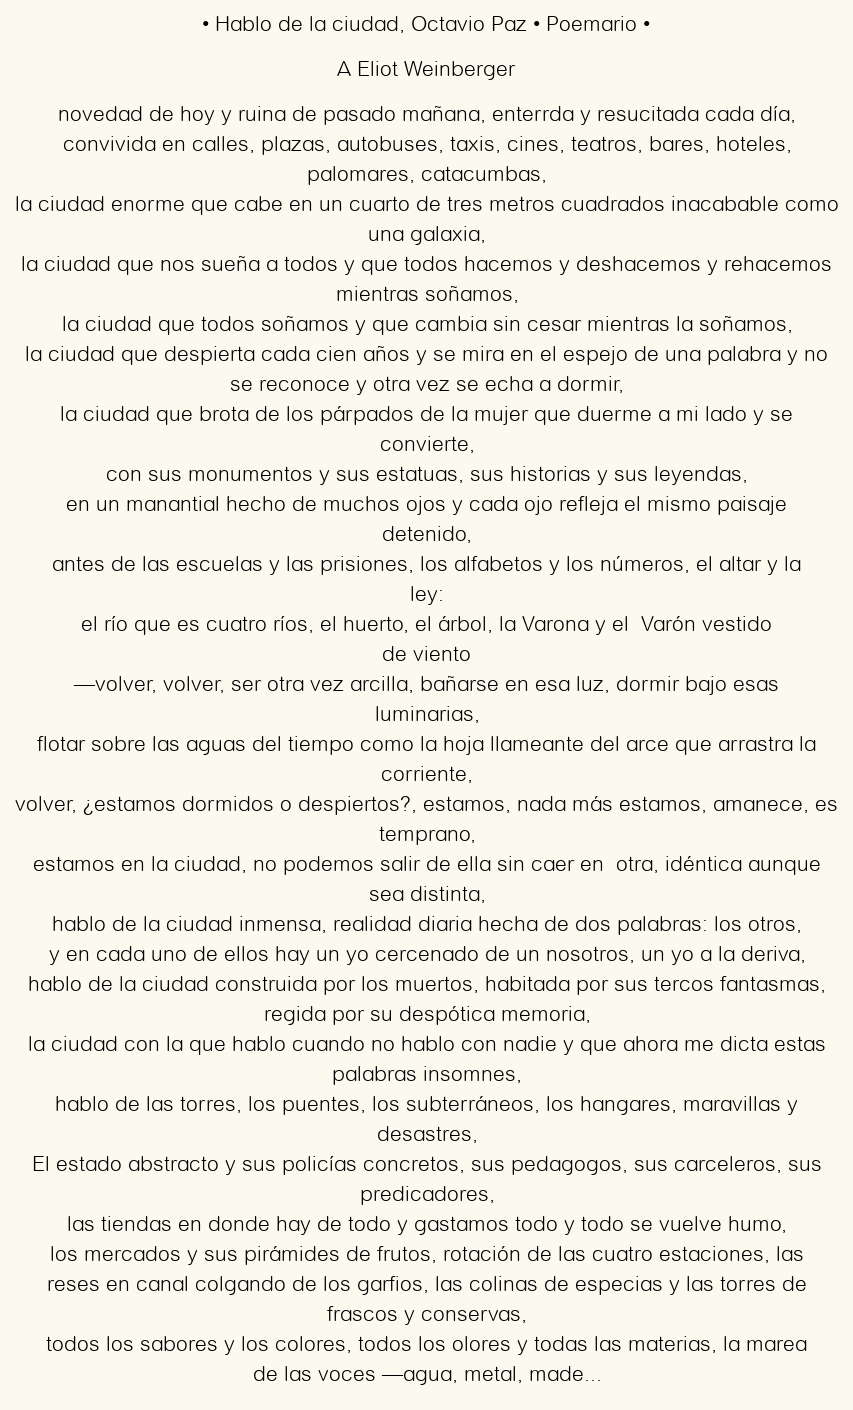 Imagen con el poema Hablo de la ciudad, por Octavio Paz